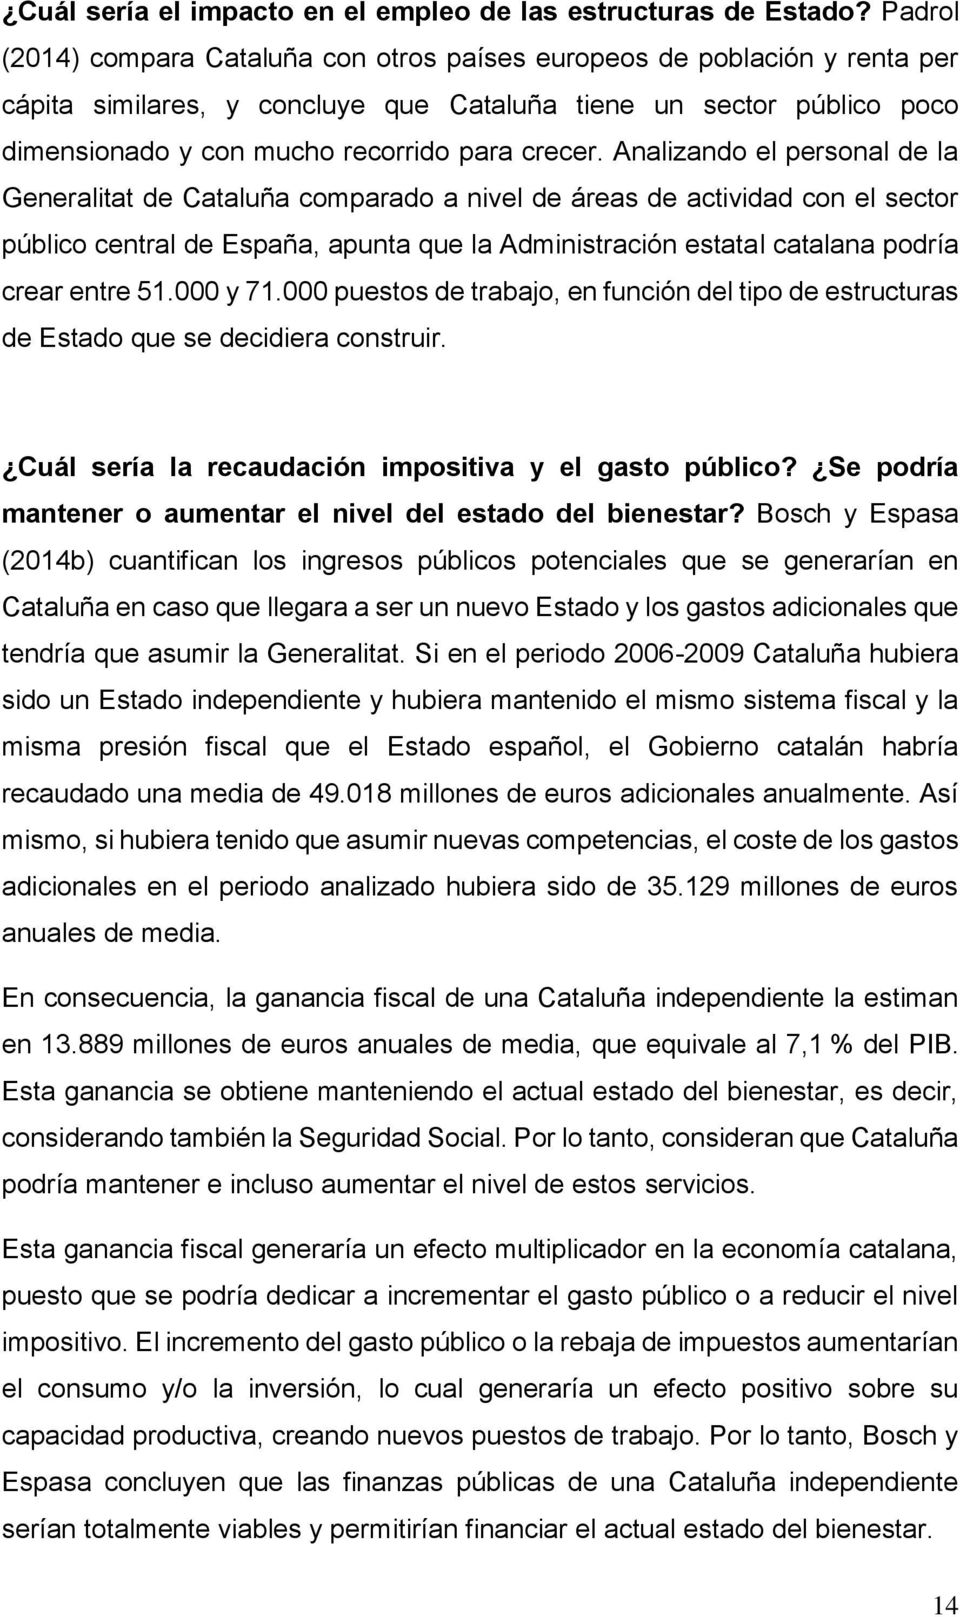 Analizando el personal de la Generalitat de Cataluña comparado a nivel de áreas de actividad con el sector público central de España, apunta que la Administración estatal catalana podría crear entre